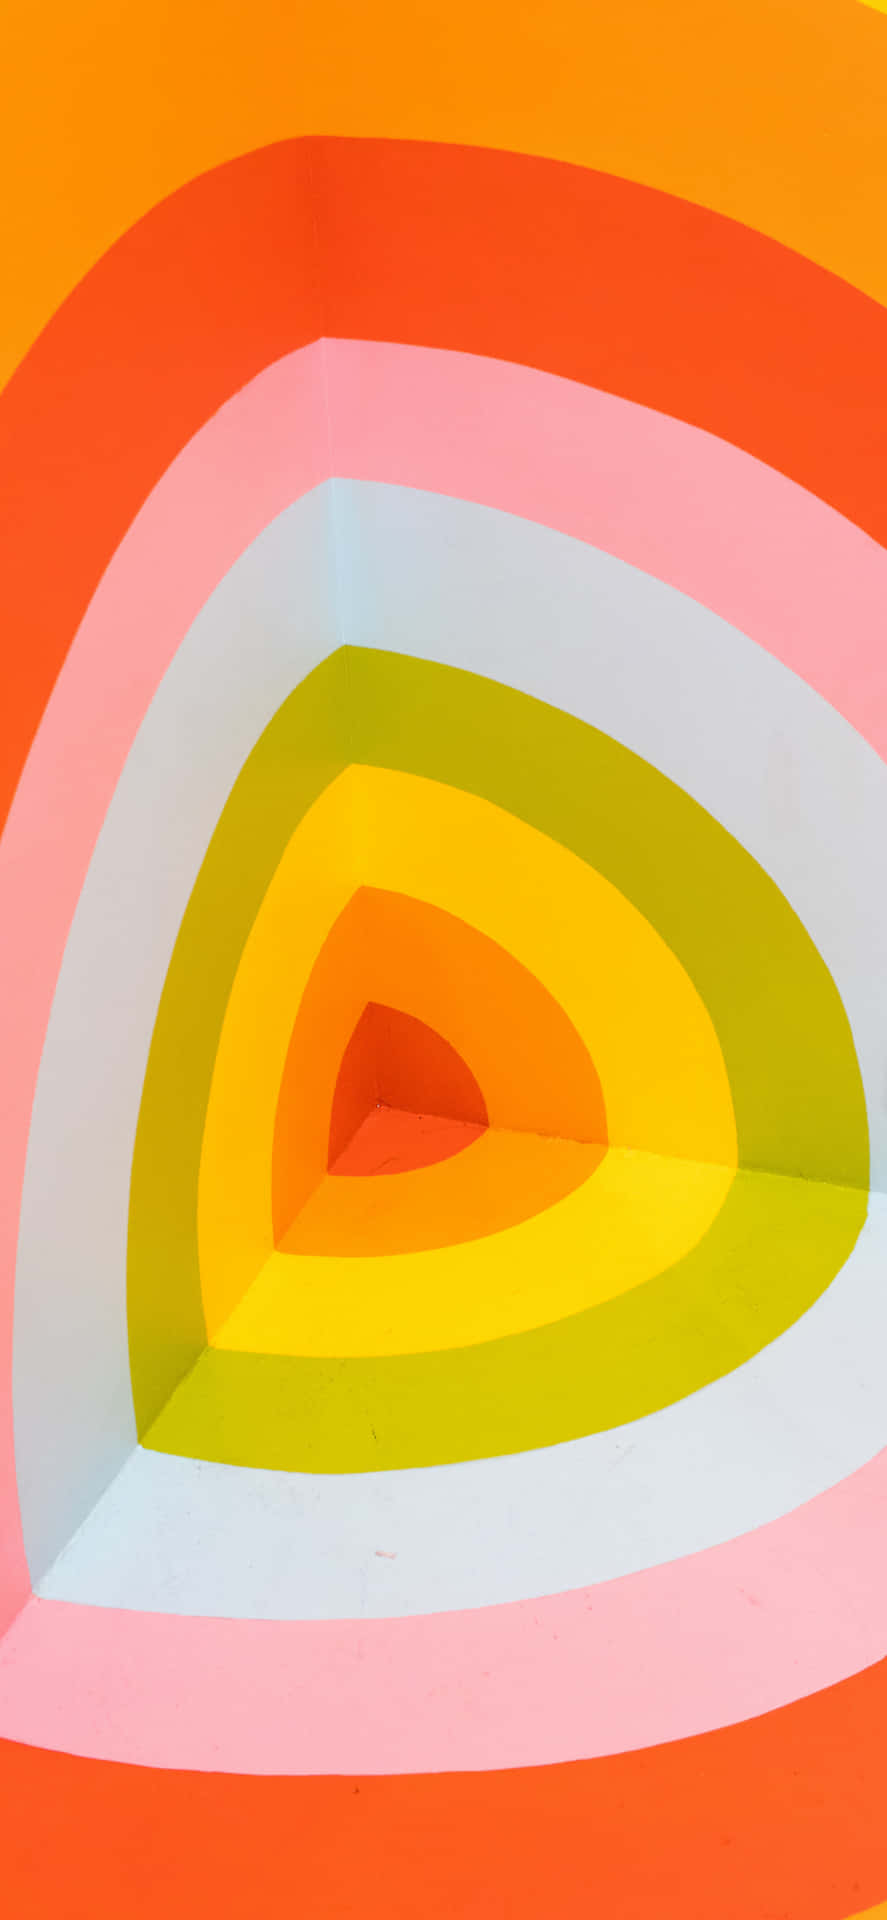 En farverig maleri af en rund form fyldt med geometriske linjer. Wallpaper